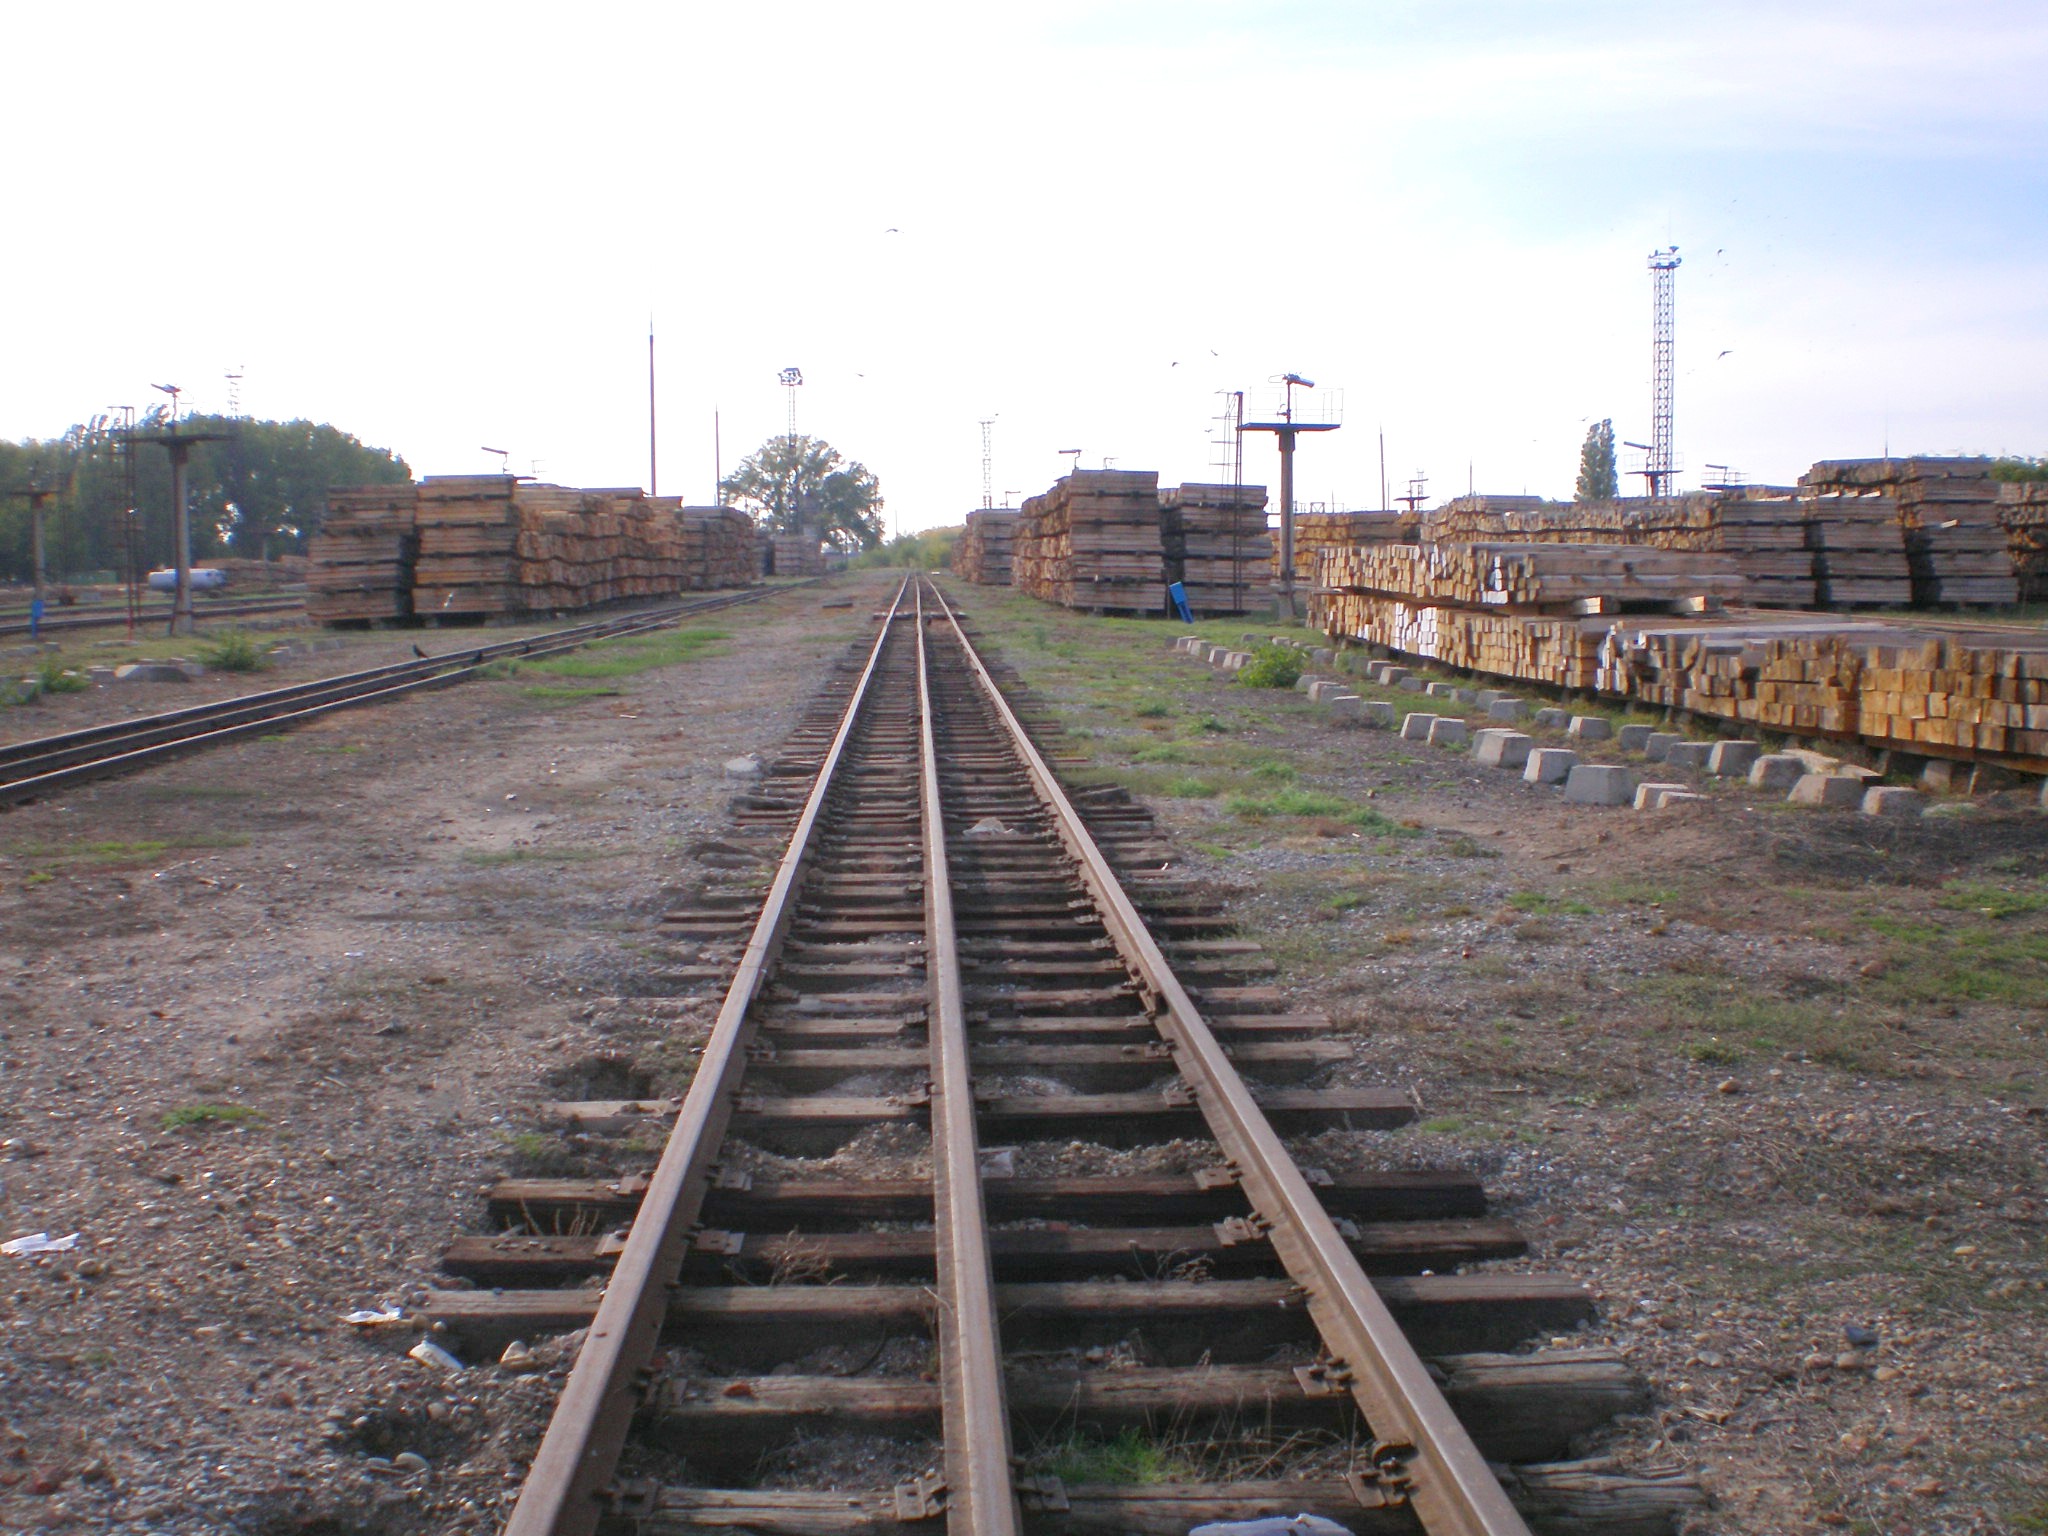 Узкоколейная железная дорога Тихорецкого шпалопропиточного завода  — фотографии, сделанные в 2007 году (часть 7)